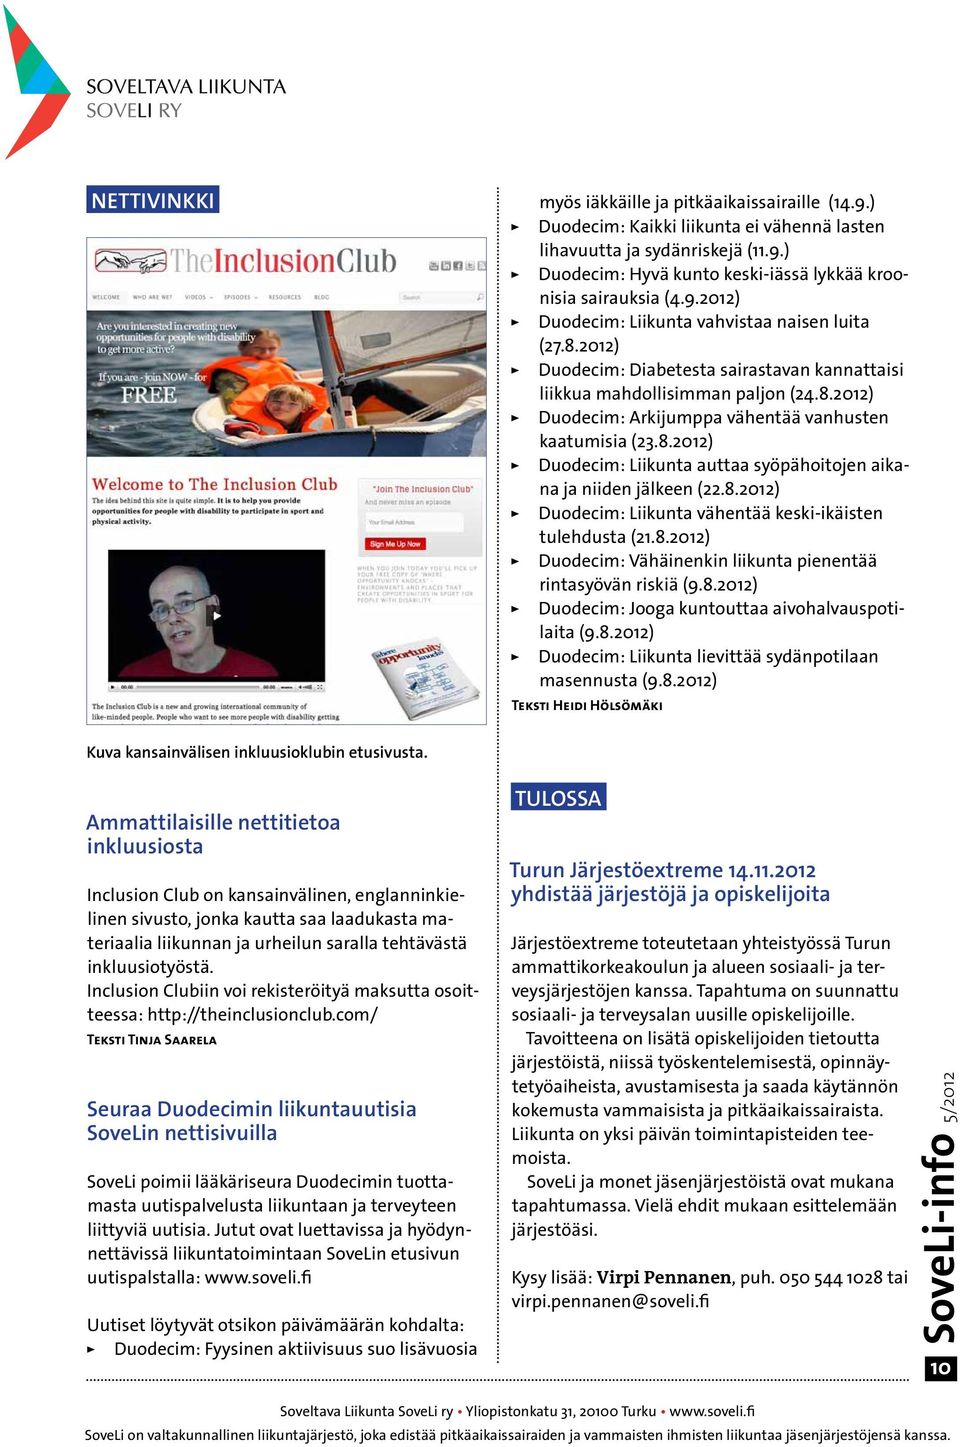 8.2012) Duodecim: Liikunta auttaa syöpähoitojen aikana ja niiden jälkeen (22.8.2012) Duodecim: Liikunta vähentää keski-ikäisten tulehdusta (21.8.2012) Duodecim: Vähäinenkin liikunta pienentää rintasyövän riskiä (9.